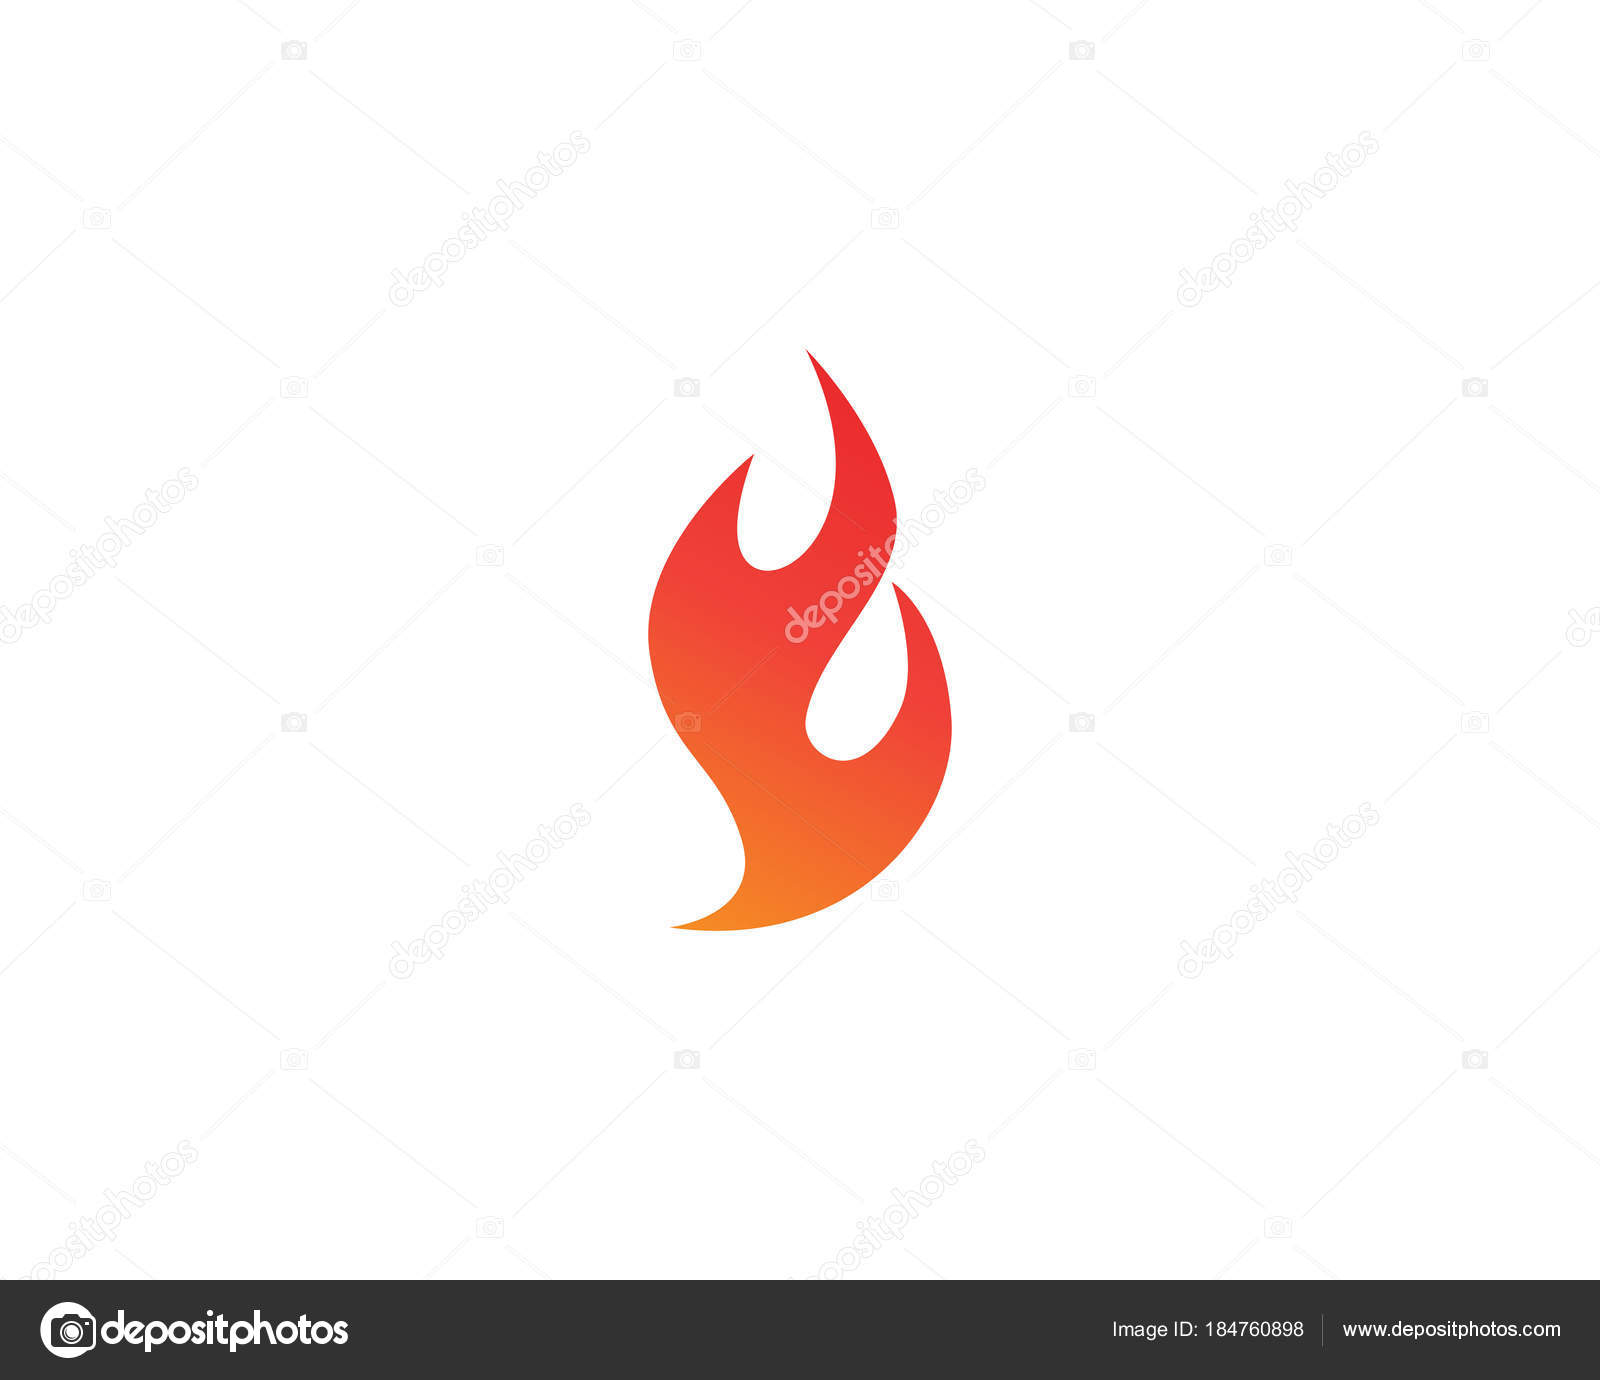 Vetor de modelo de ícones de logotipo e símbolos de chama de fogo